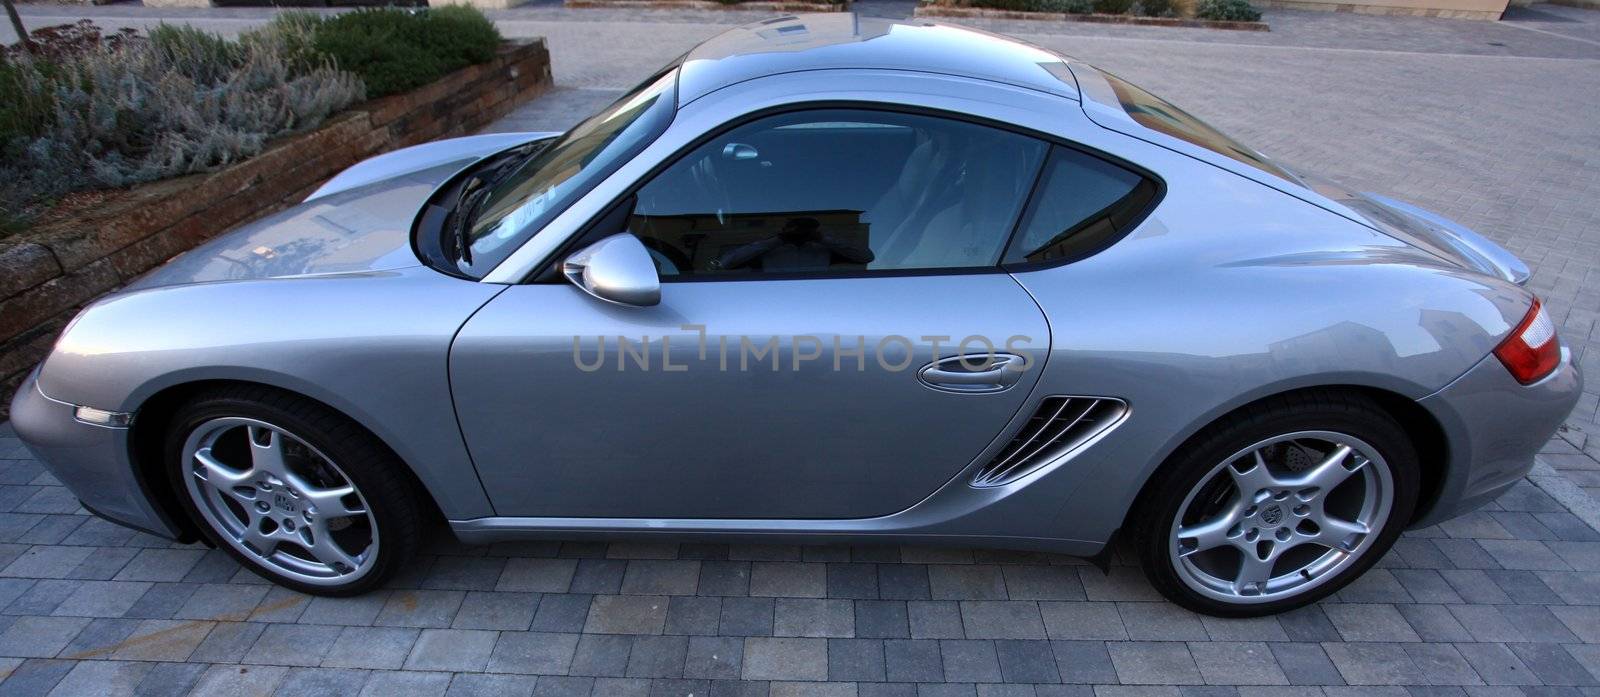 Brand new modern Porsche Cayman Sports car